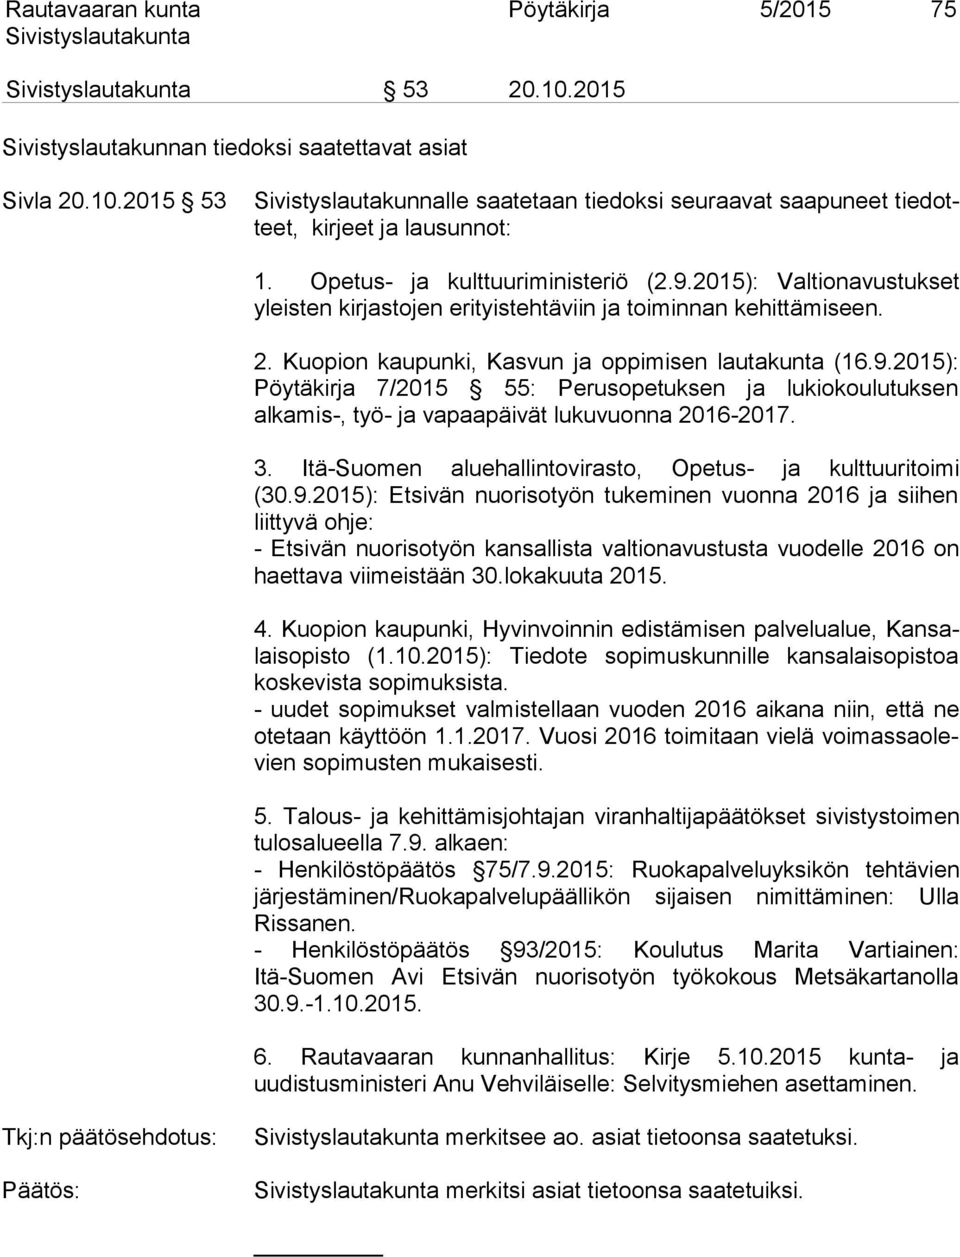 3. Itä-Suomen aluehallintovirasto, Opetus- ja kulttuuritoimi (30.9.